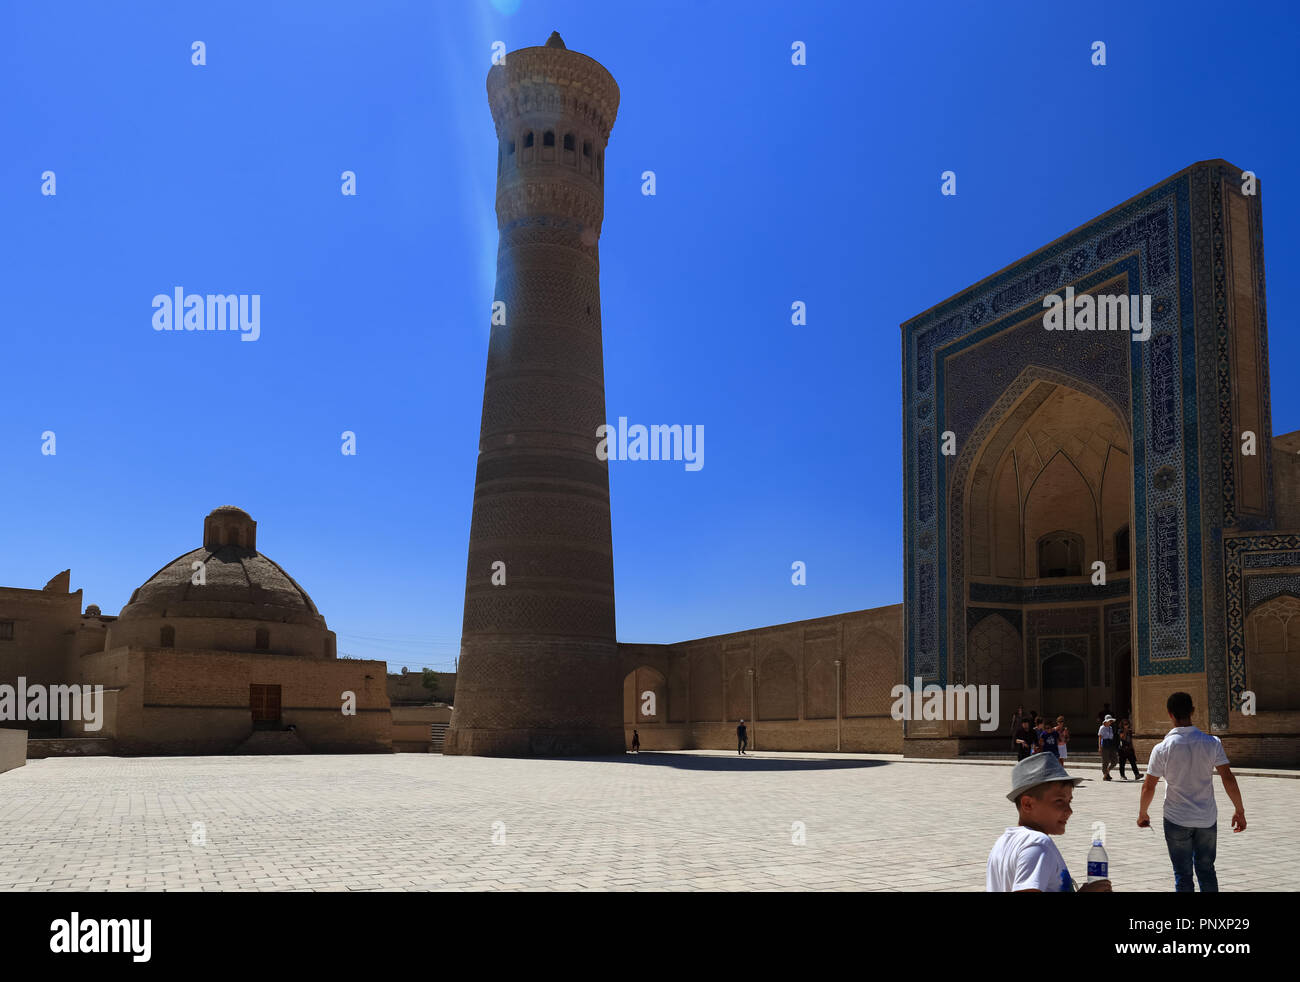 Bukhara, Uzbekistan - Agosto 27, 2016: Il Minareto Kalyan, fu costruito nel 1127 CE, stand come un incredibile meraviglia architettonica nell'antica via della seta. Foto Stock